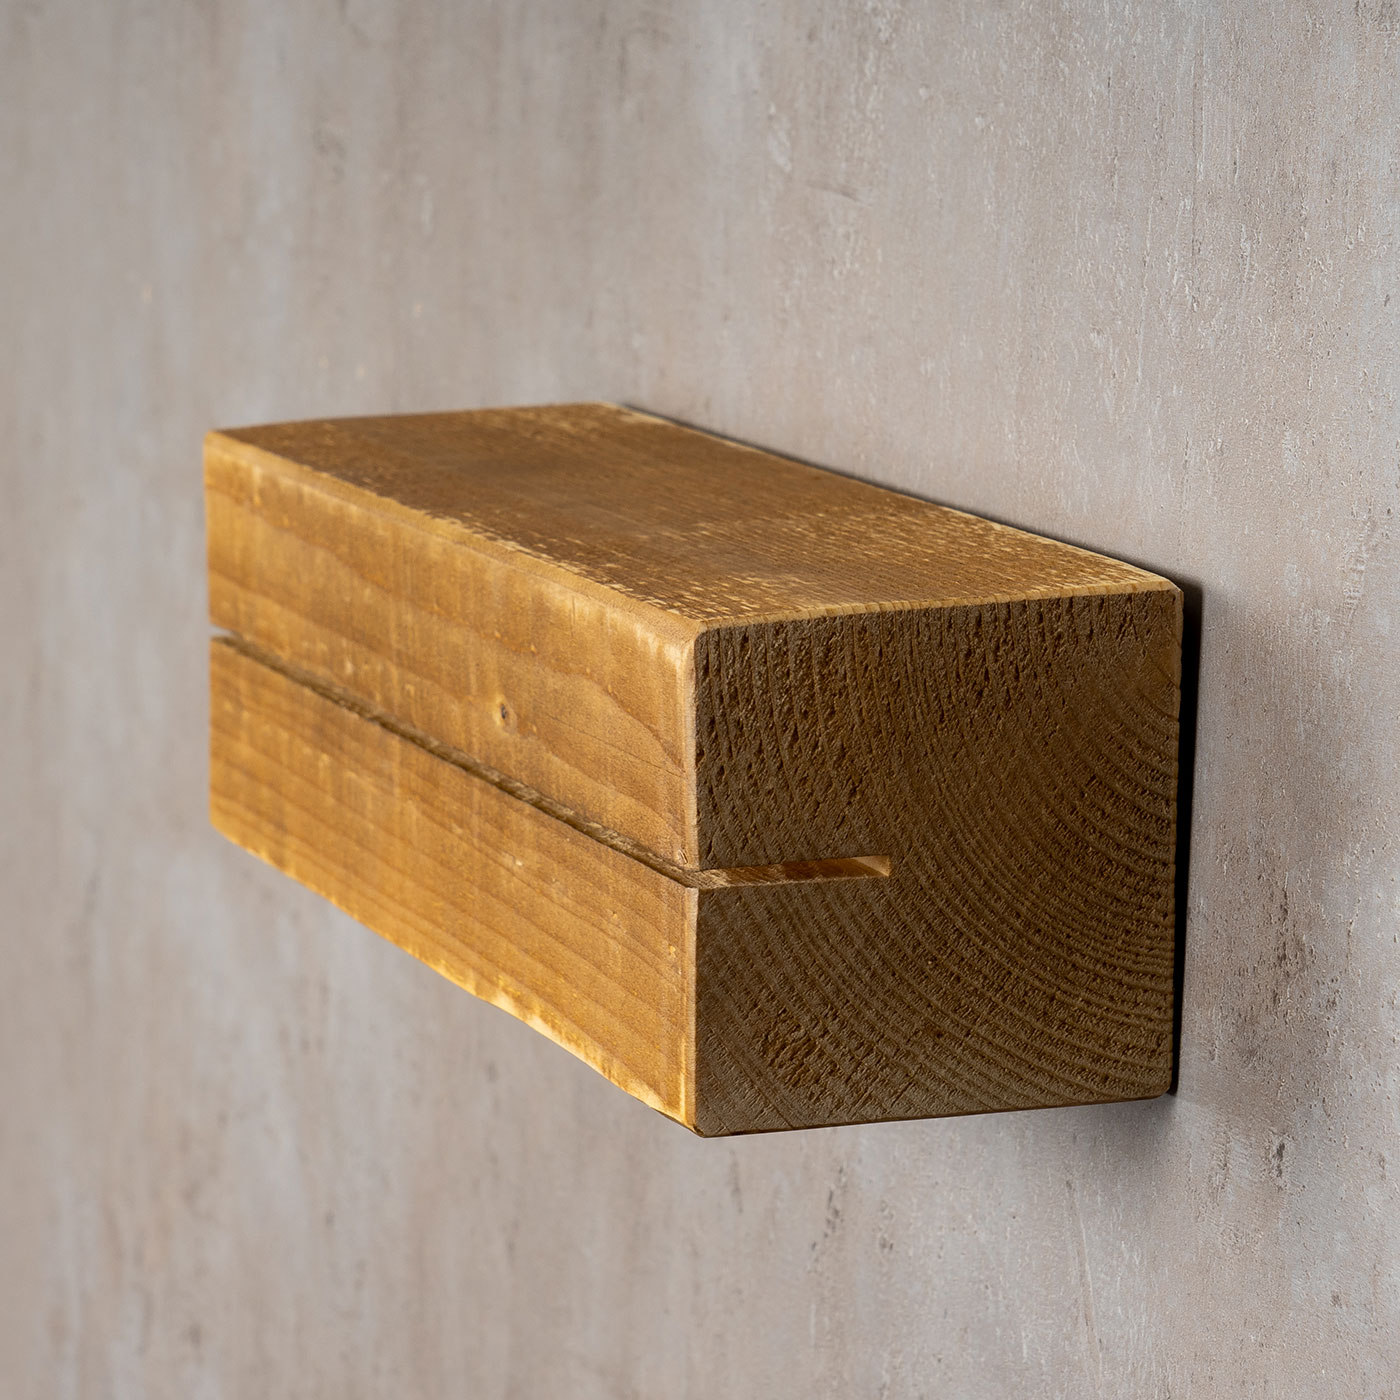 levandeo Schlüsselbrett Holz Massiv 35x10cm Eiche lackiert Schlüsselleiste Board